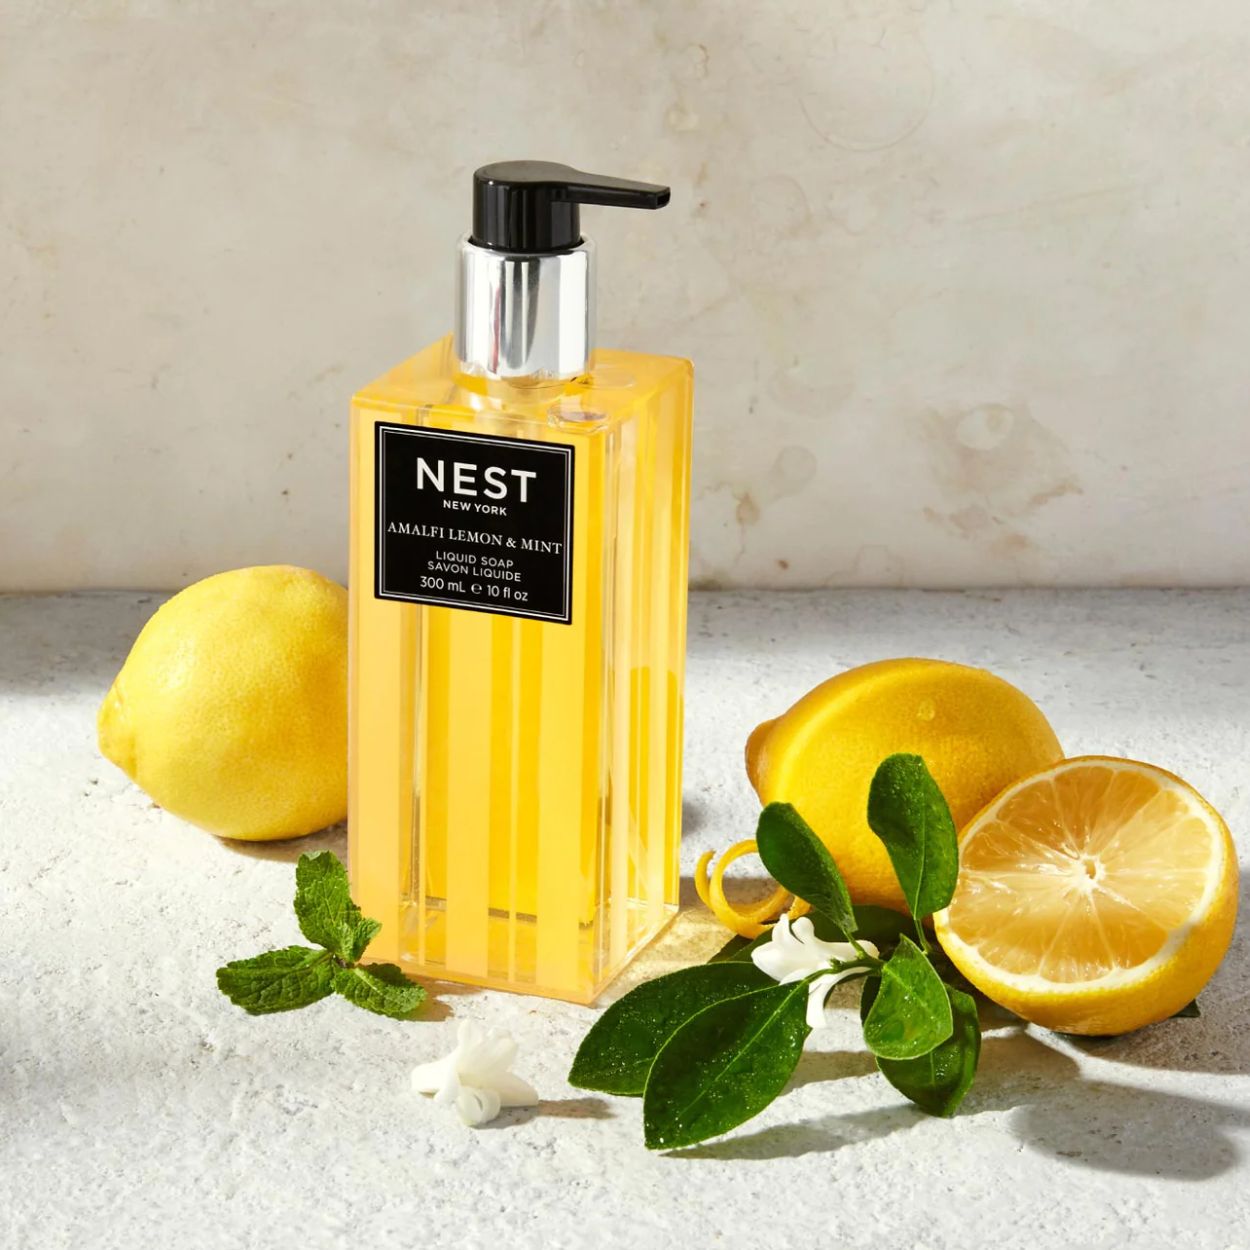 Amalfi Lemon and Mint Liquid Soap